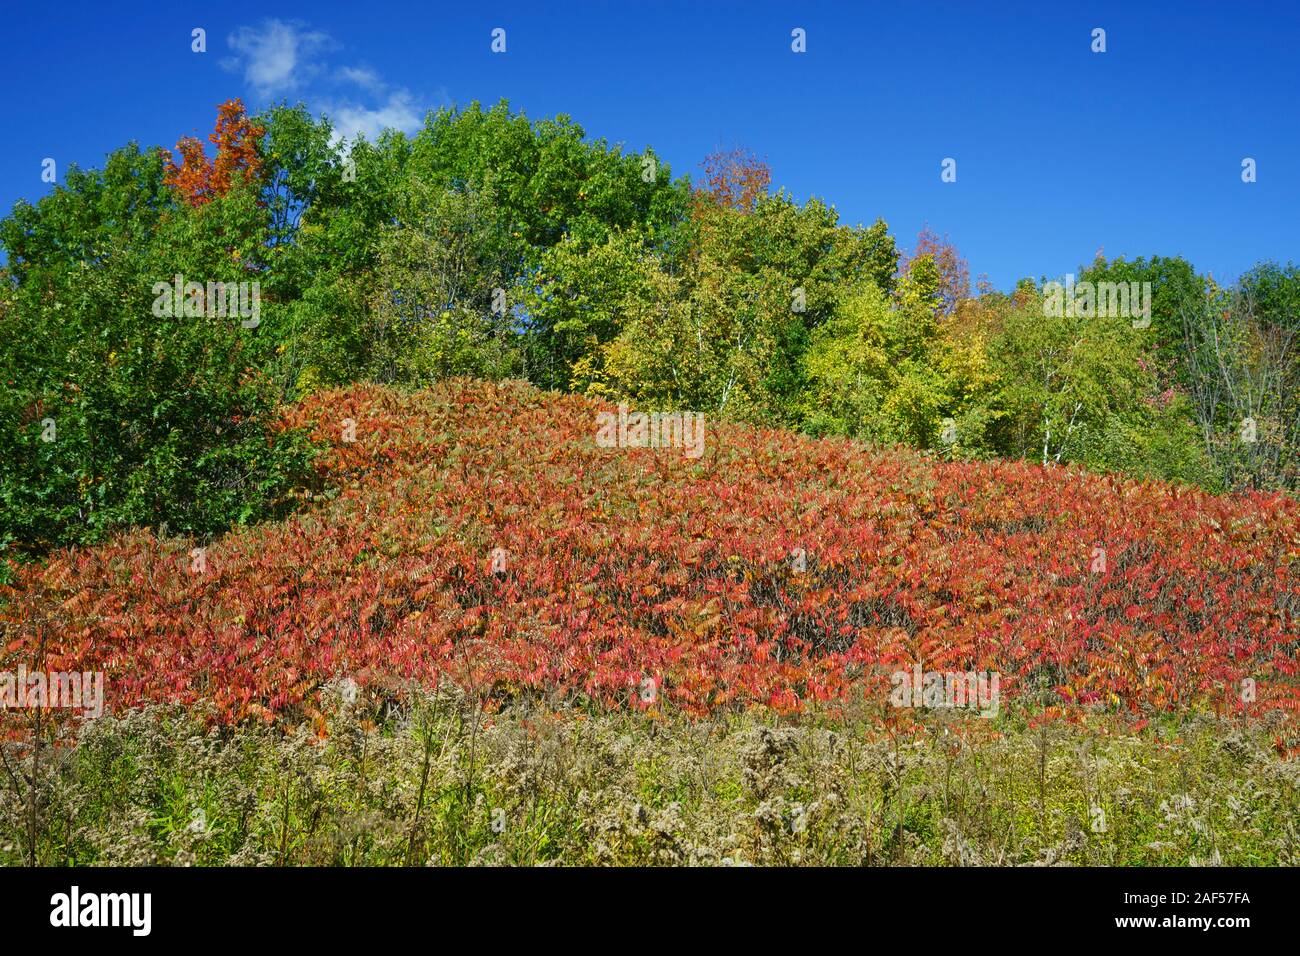 Vinegar tree leaves turned red amongst still green vegetation. Stock Photo